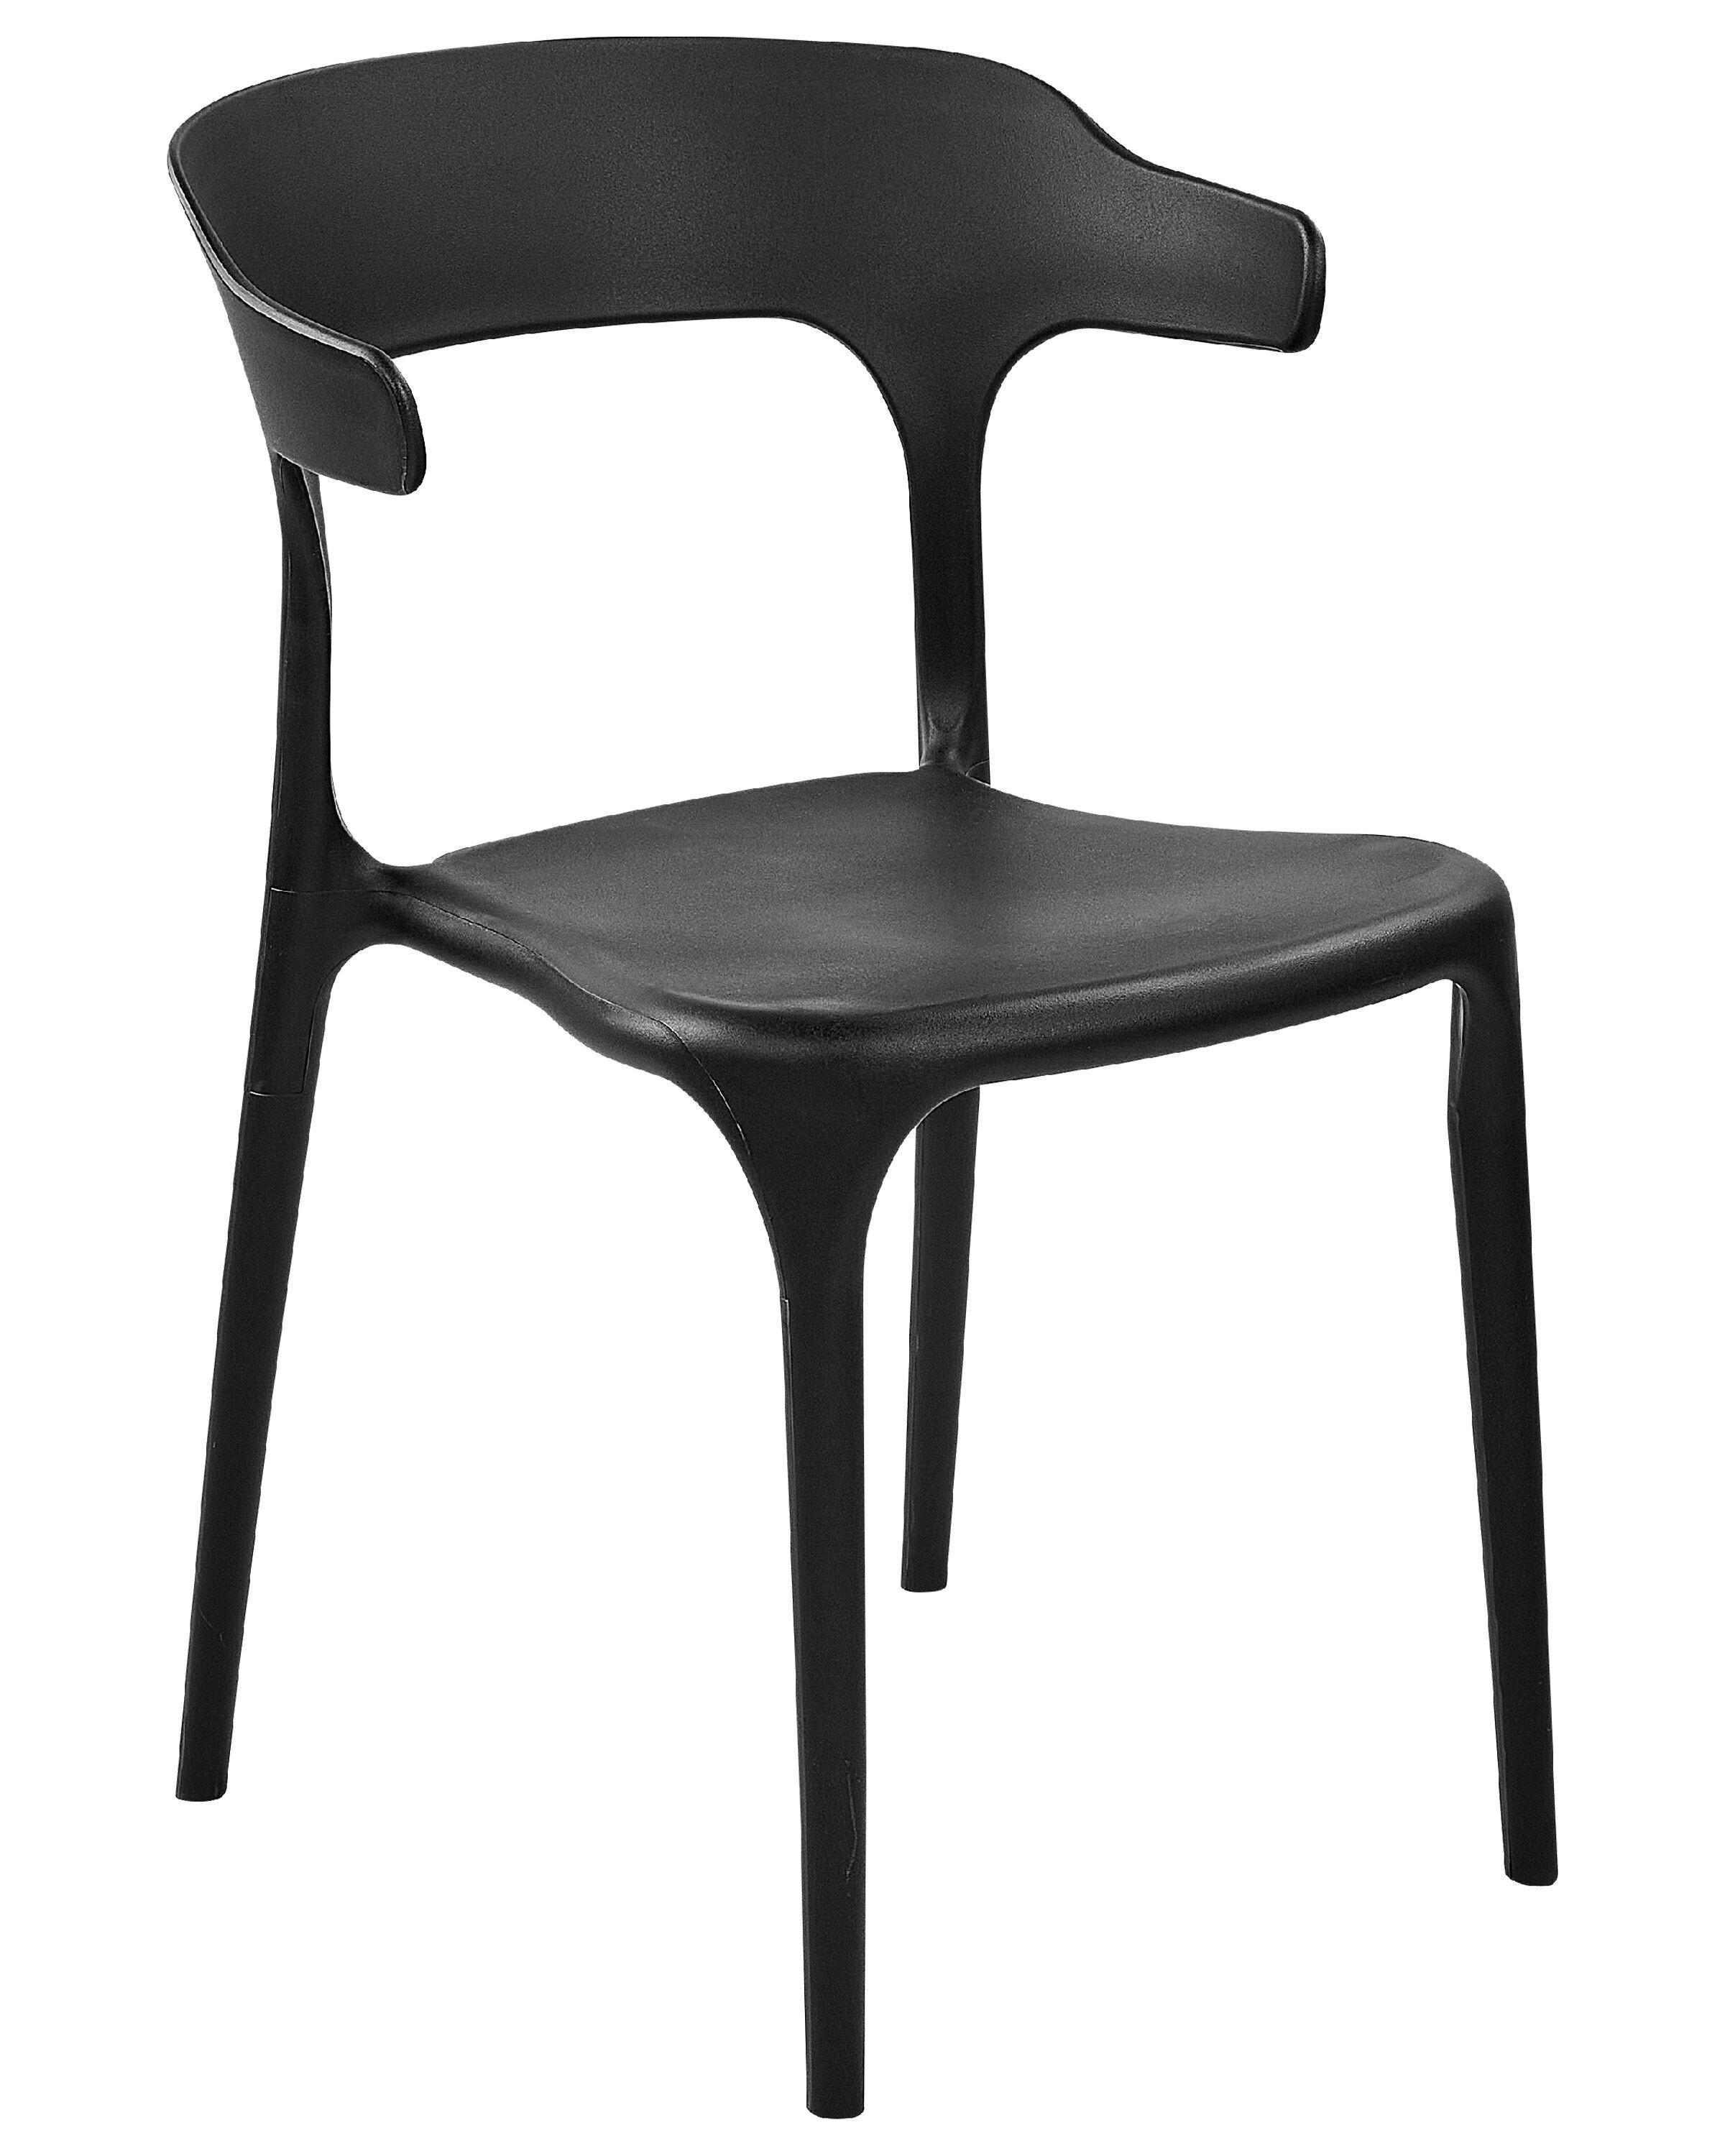 Beliani Set mit 8 Stühlen aus Polypropylen Modern GUBBIO  